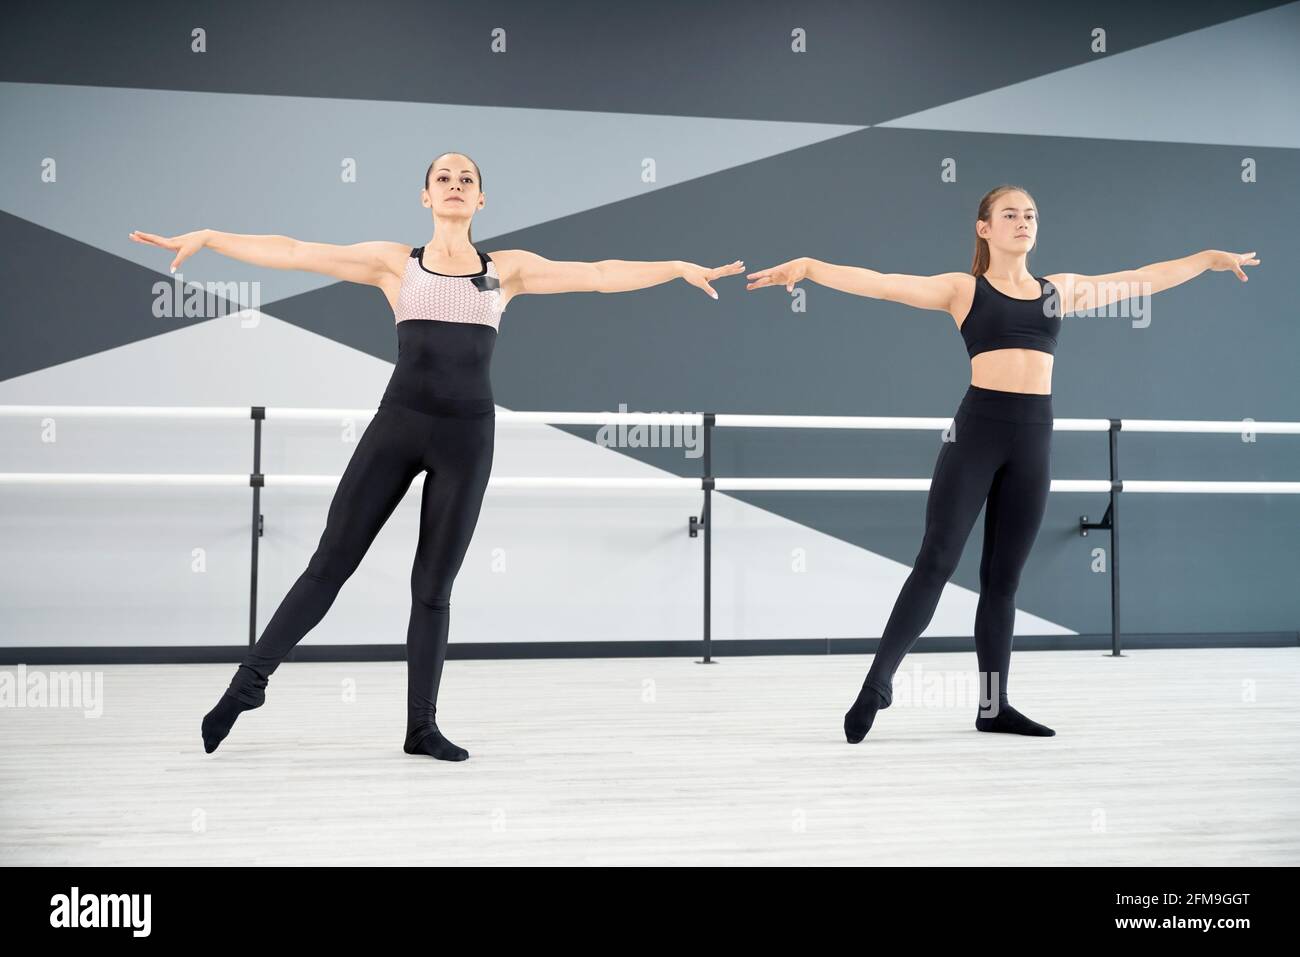 Erwachsene weibliche Ausbilderin hilft jungen Mädchen in schwarzer Sportkleidung choreographische Bewegung zu lernen. Zwei synchronisierte Frauen üben in der Halle, Hi-Tech-Interieur. Choreographie, Gymnastik-Konzept. Stockfoto